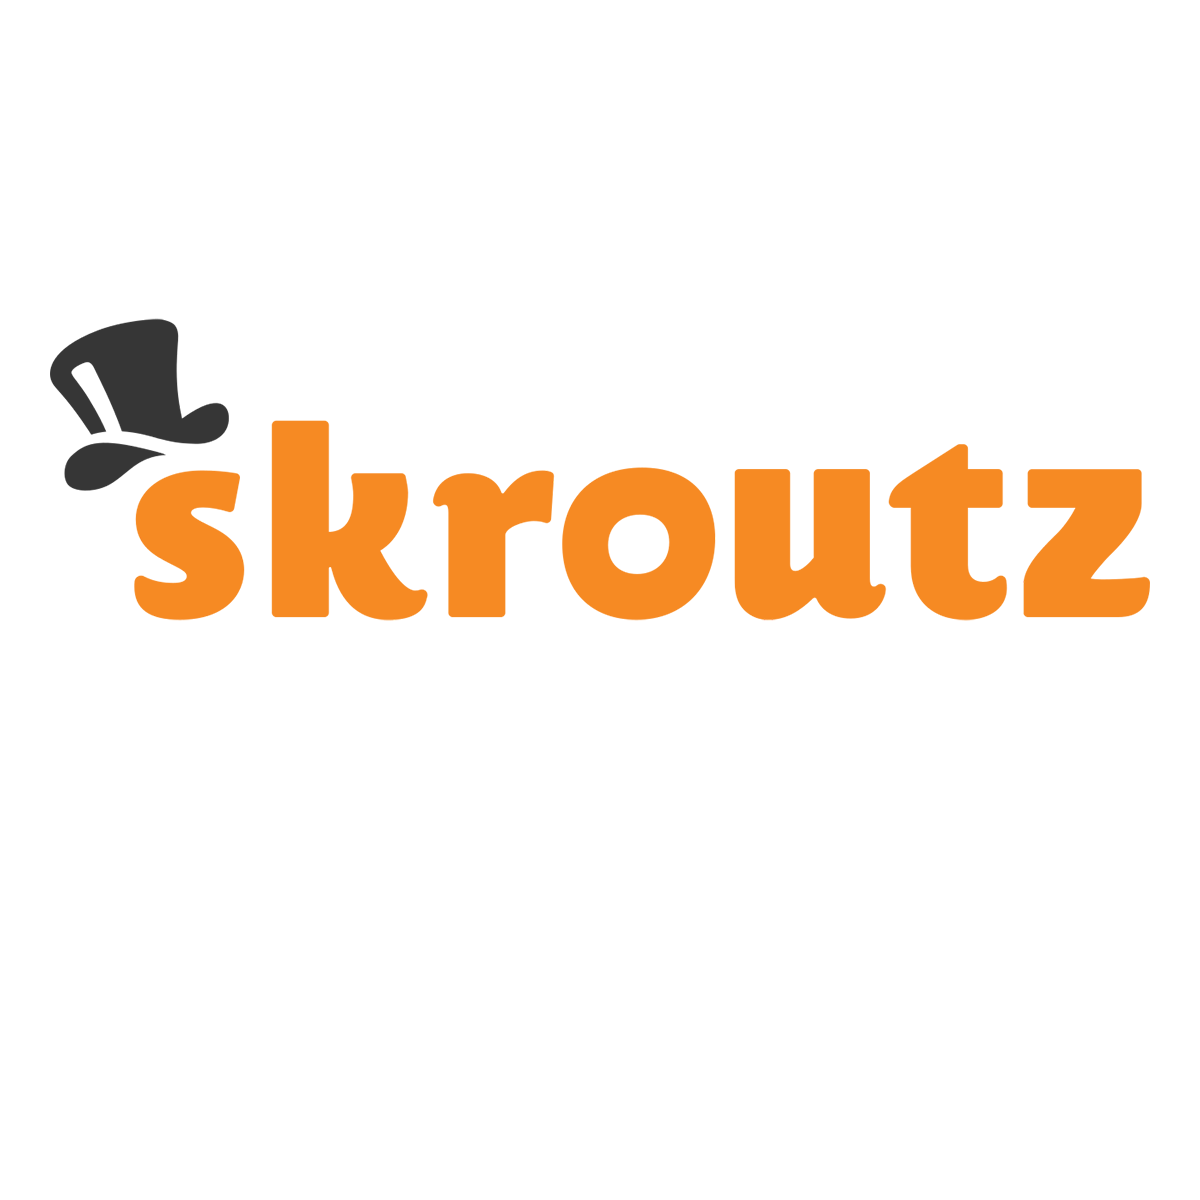 806-skroutz-1200x1200.png